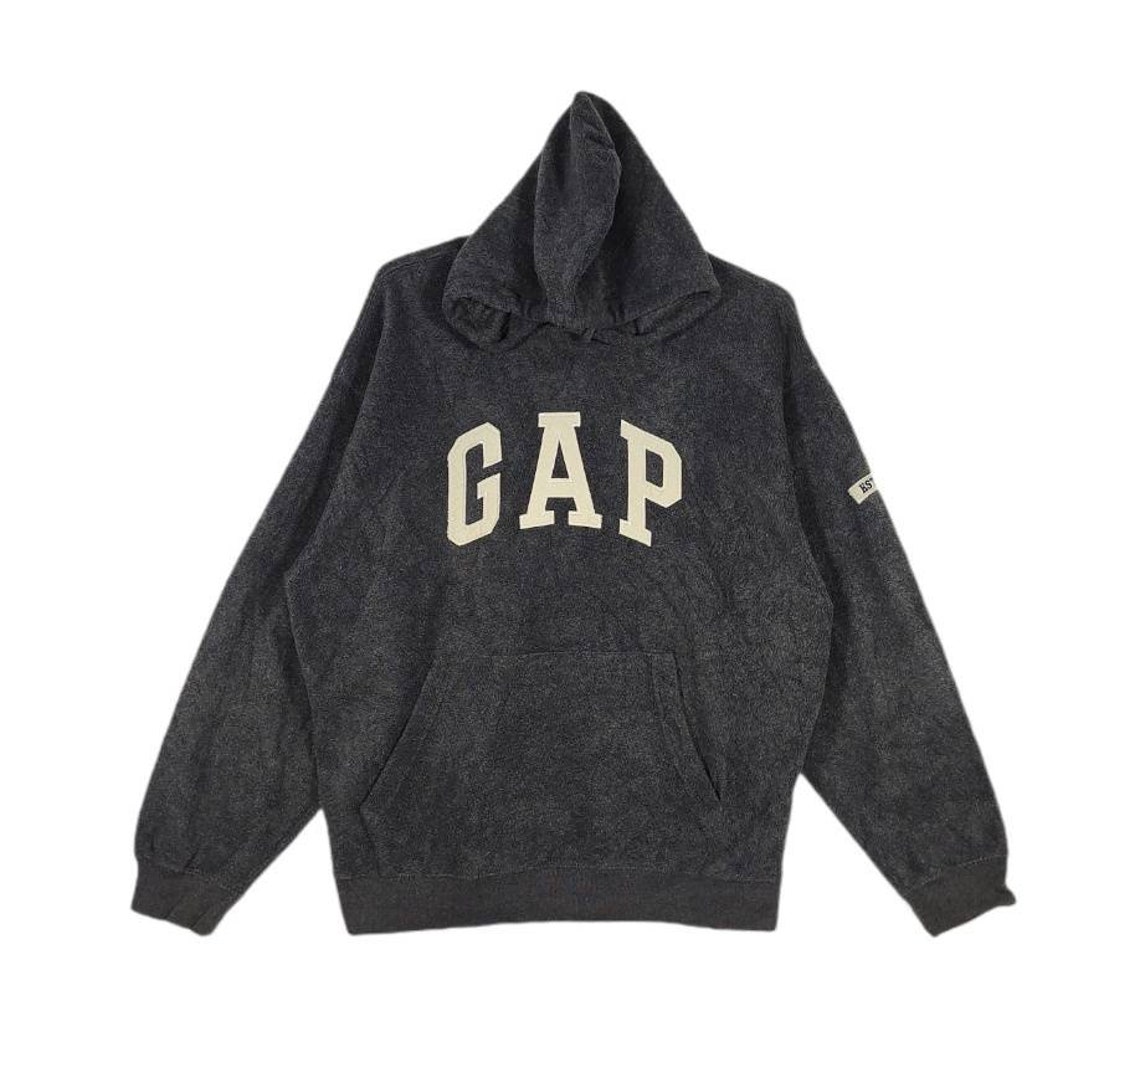 Vintage Gap Sweatshirt Hoodie Embroidery Logo Made in Korea - Etsy